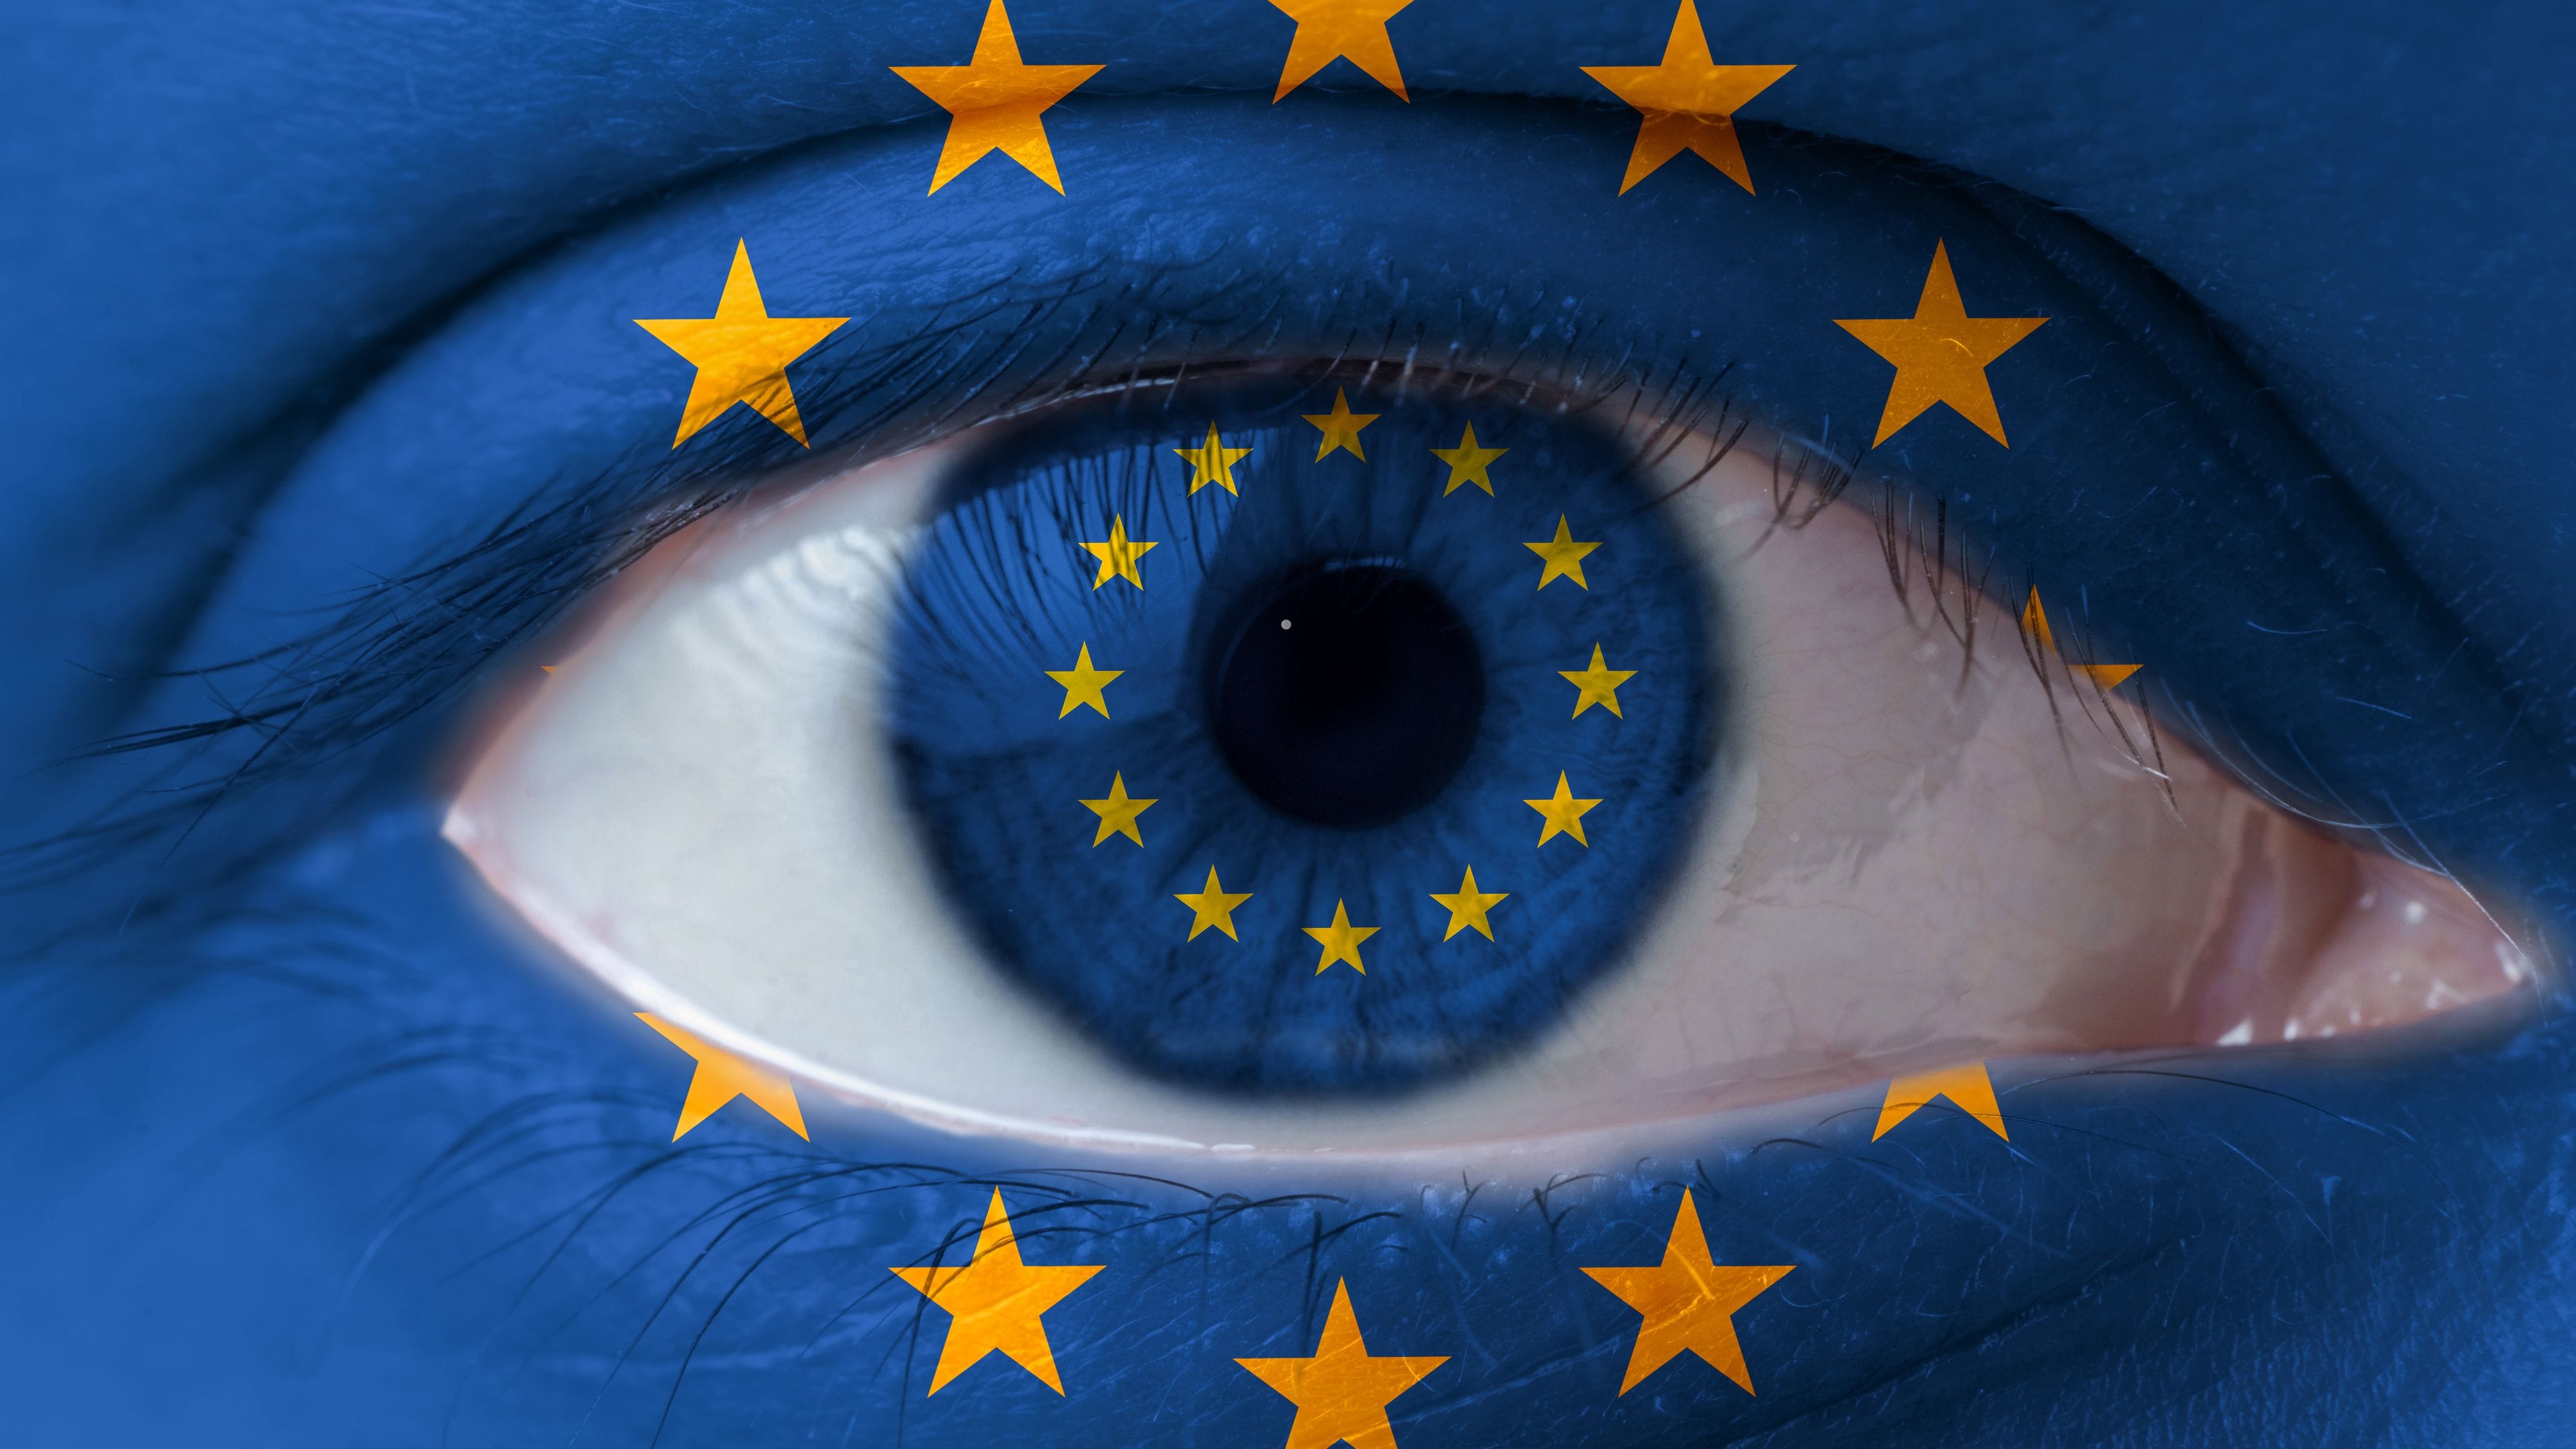 Europawahl im Quiz: Testen Sie Ihr Politik-Verständnis | Allgemeinwissen